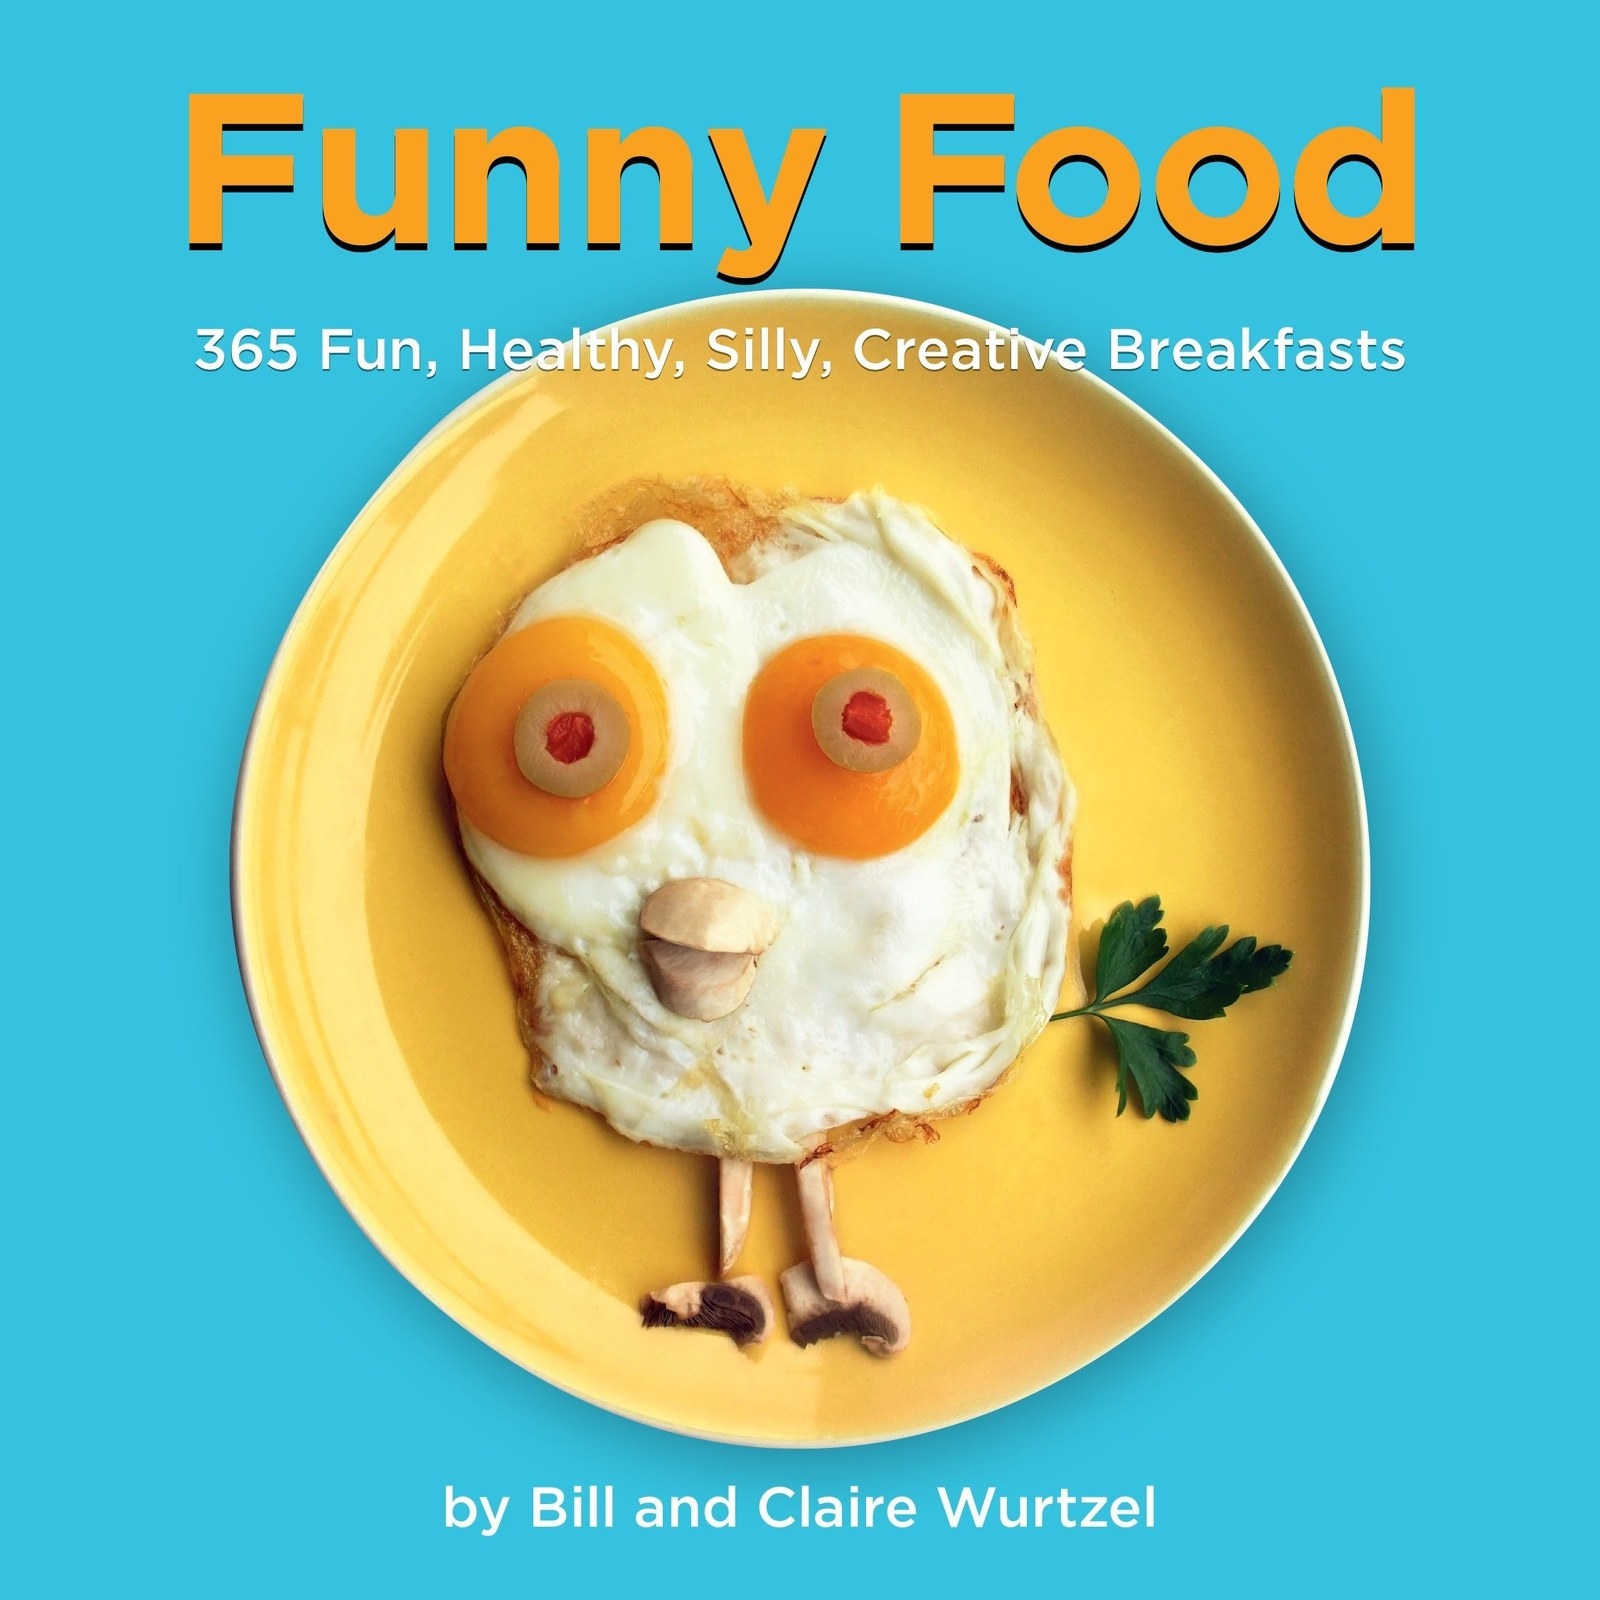 365 fun. Смешная еда. Funny food книга. Fun food. Silly fun.